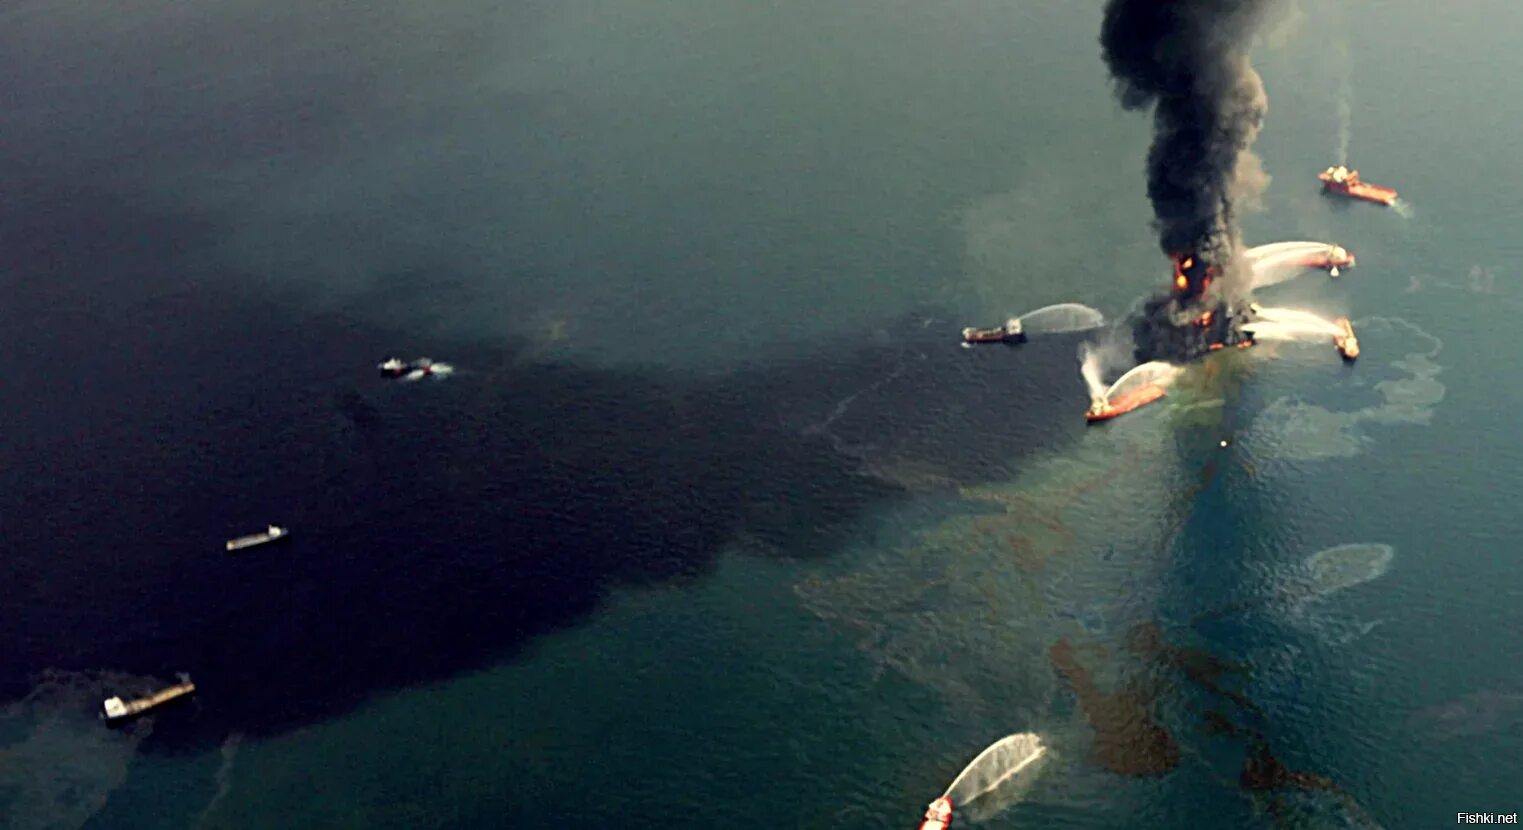 Игольн ца залив стый смех. Разлив нефти в 2010 году в мексиканском заливе. Апрель 2010 мексиканский залив. Глубоководный Горизонт разлив нефти. Взрыв нефтяной платформы Deepwater Horizon - 20 апреля 2010 года.